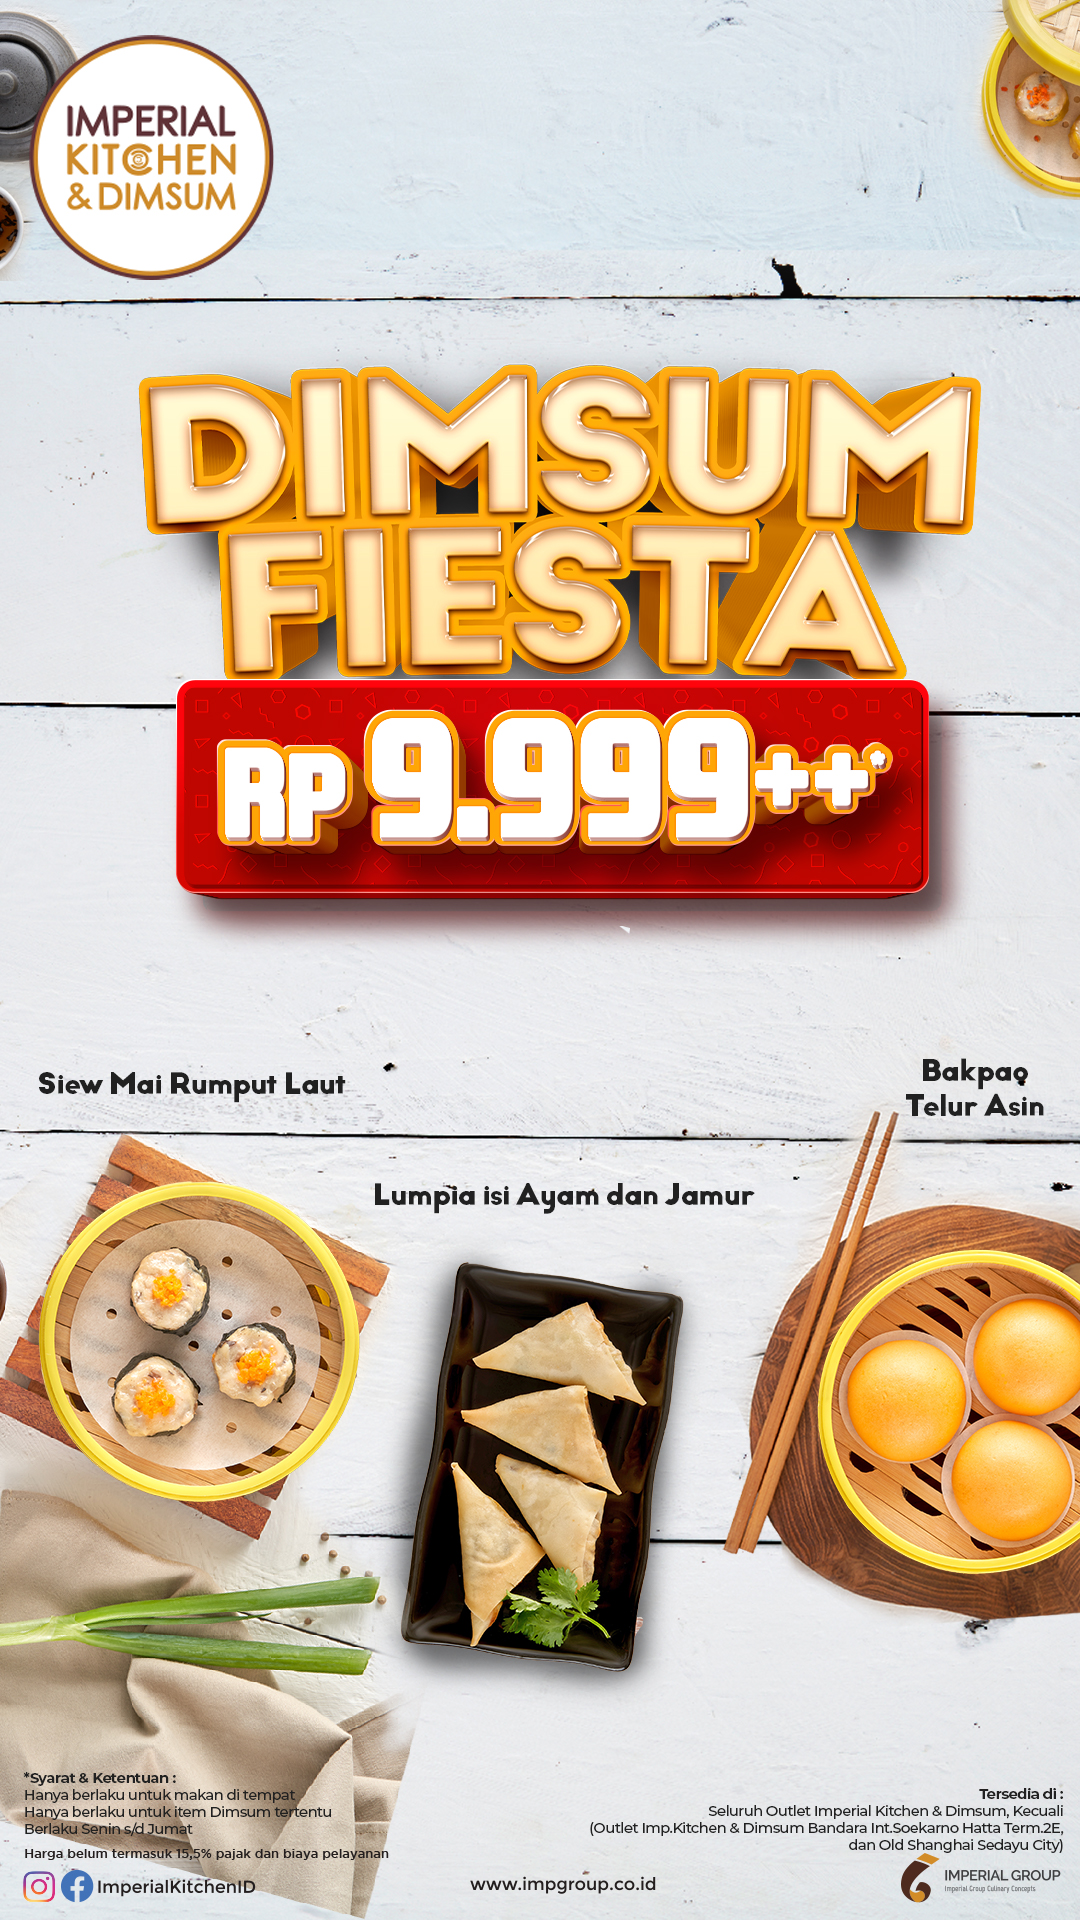 Imperial Kitchen - Dimsum Fiesta